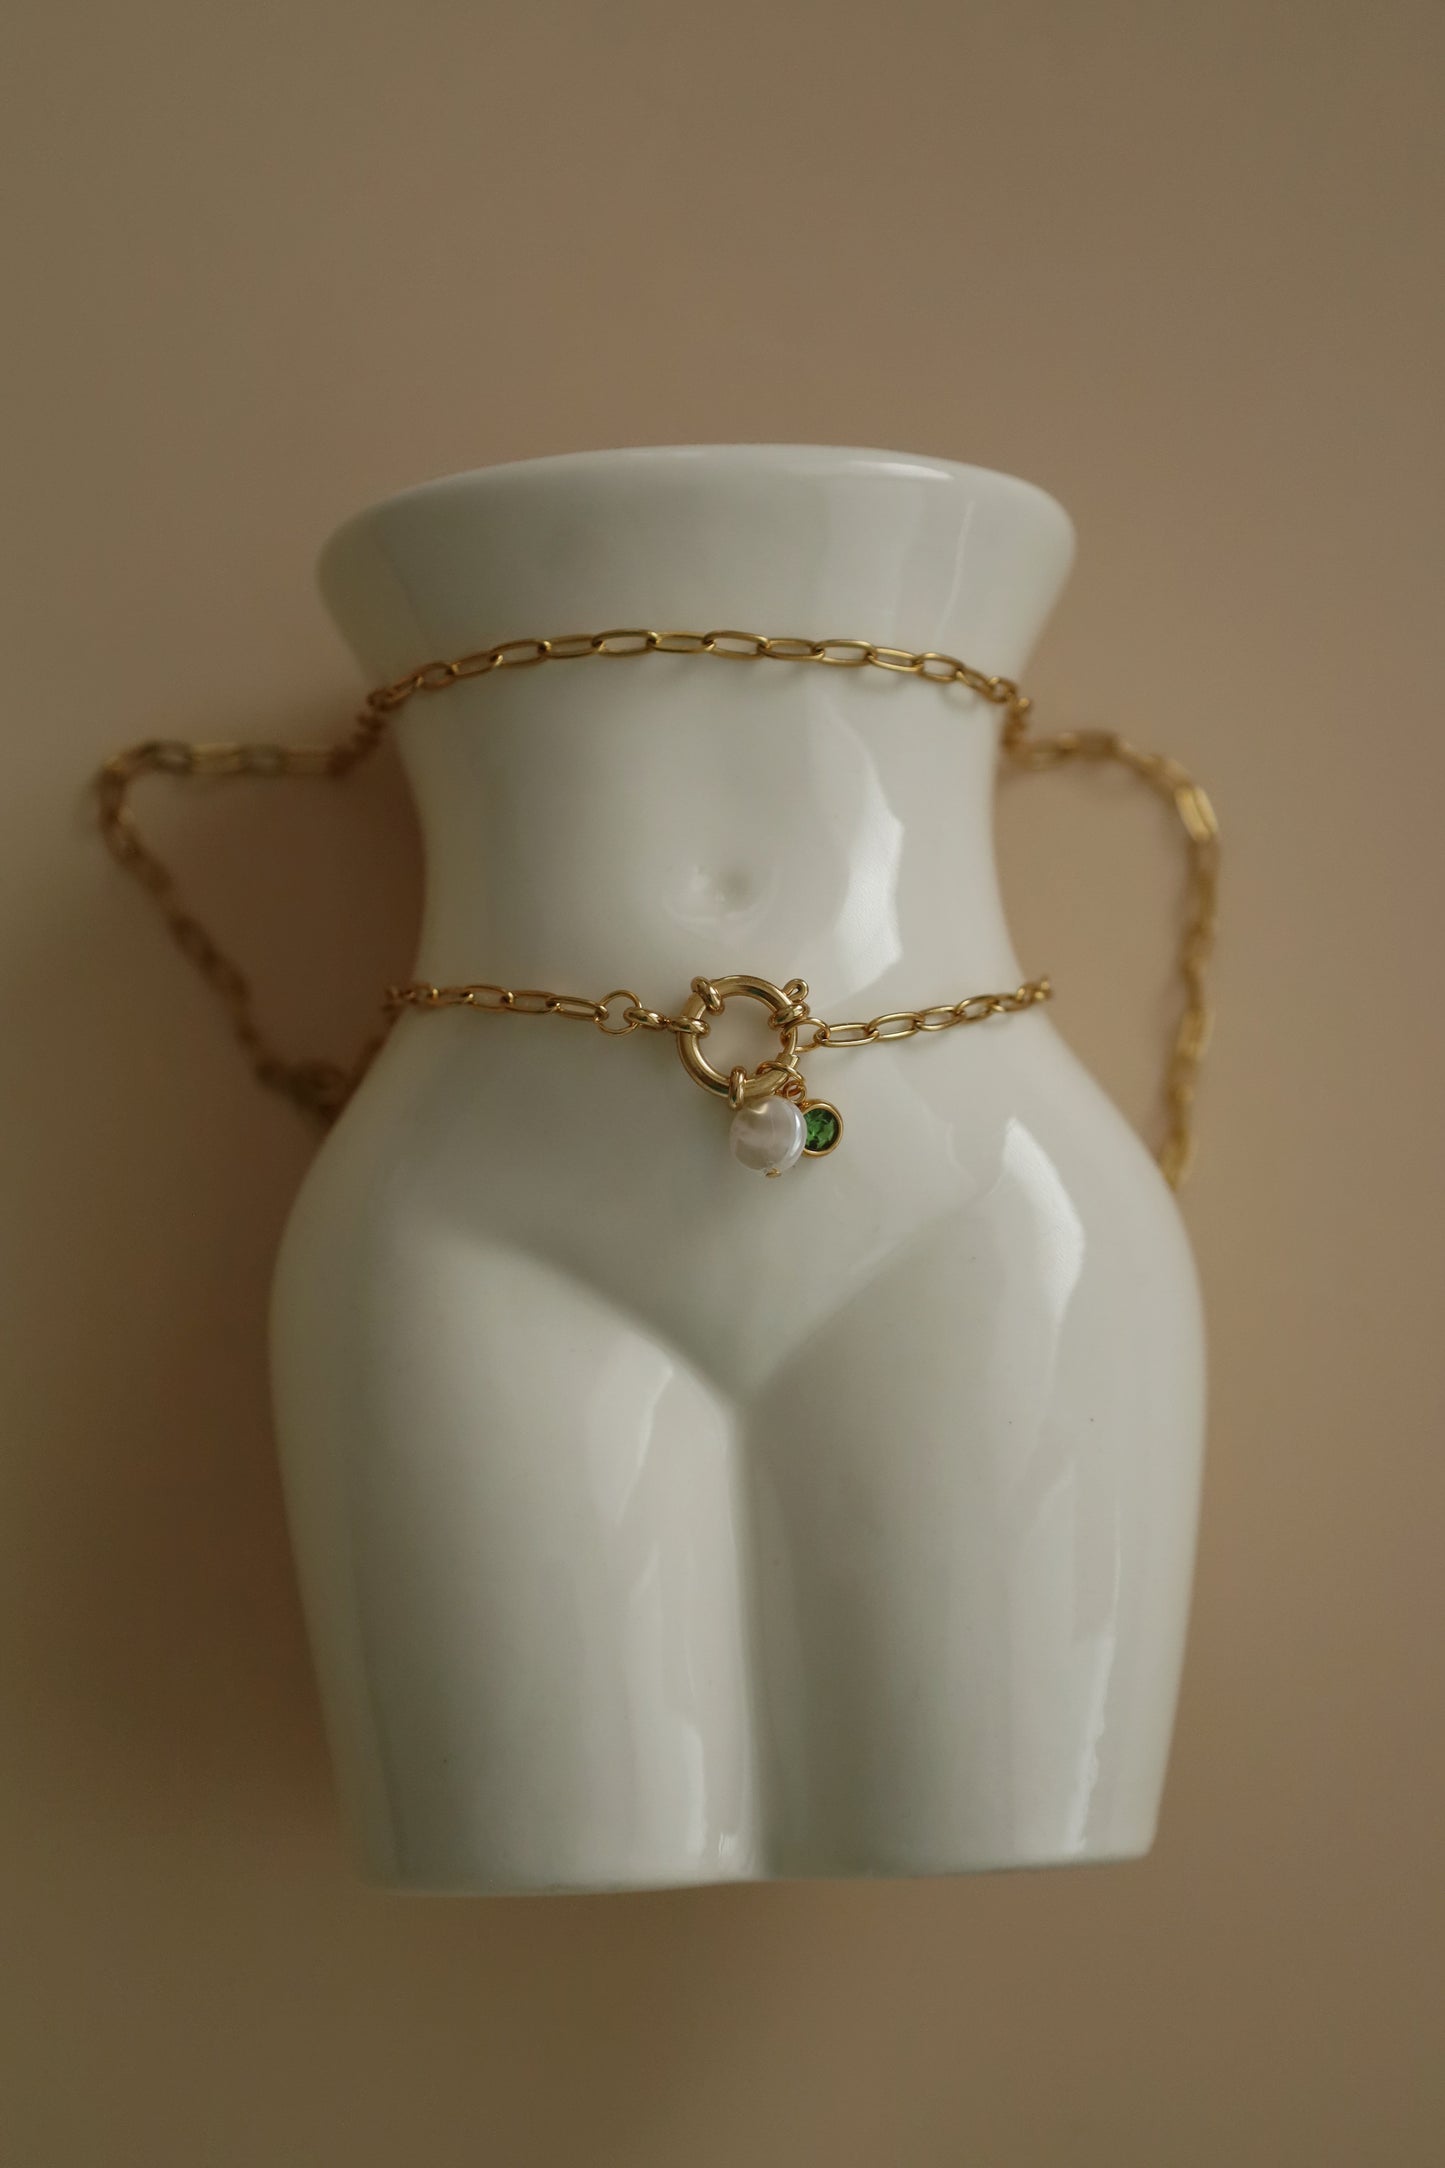 Ženský nerezový náhrdelník s perlou a zeleným kamenem - FRIDA